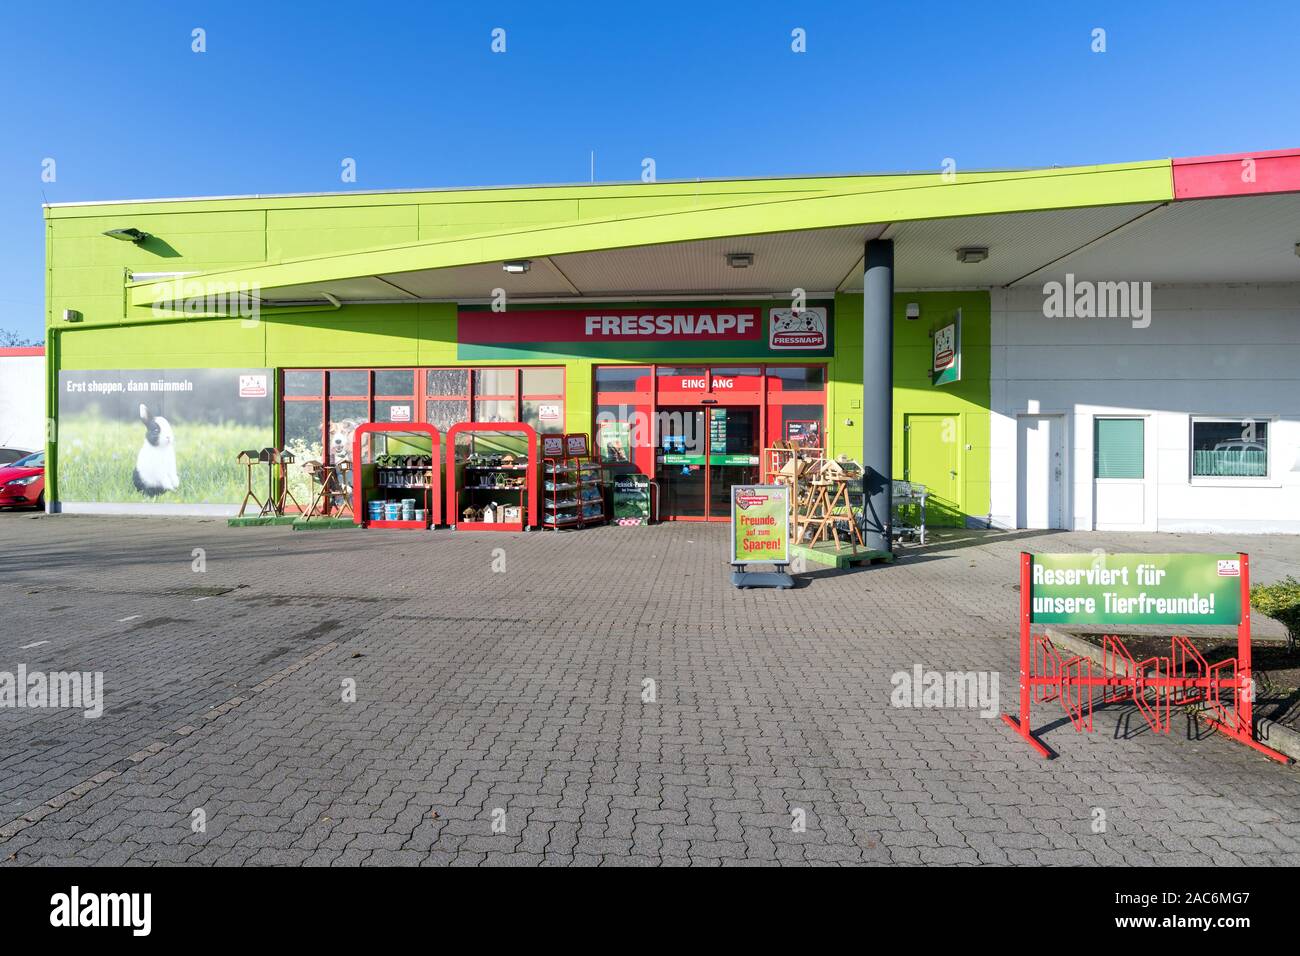 Fressnapf store in Cuxhaven, Germania. Con oltre 1.400 negozi in 12 paesi europei Fressnapf è la più grande comunità pet food company. Foto Stock